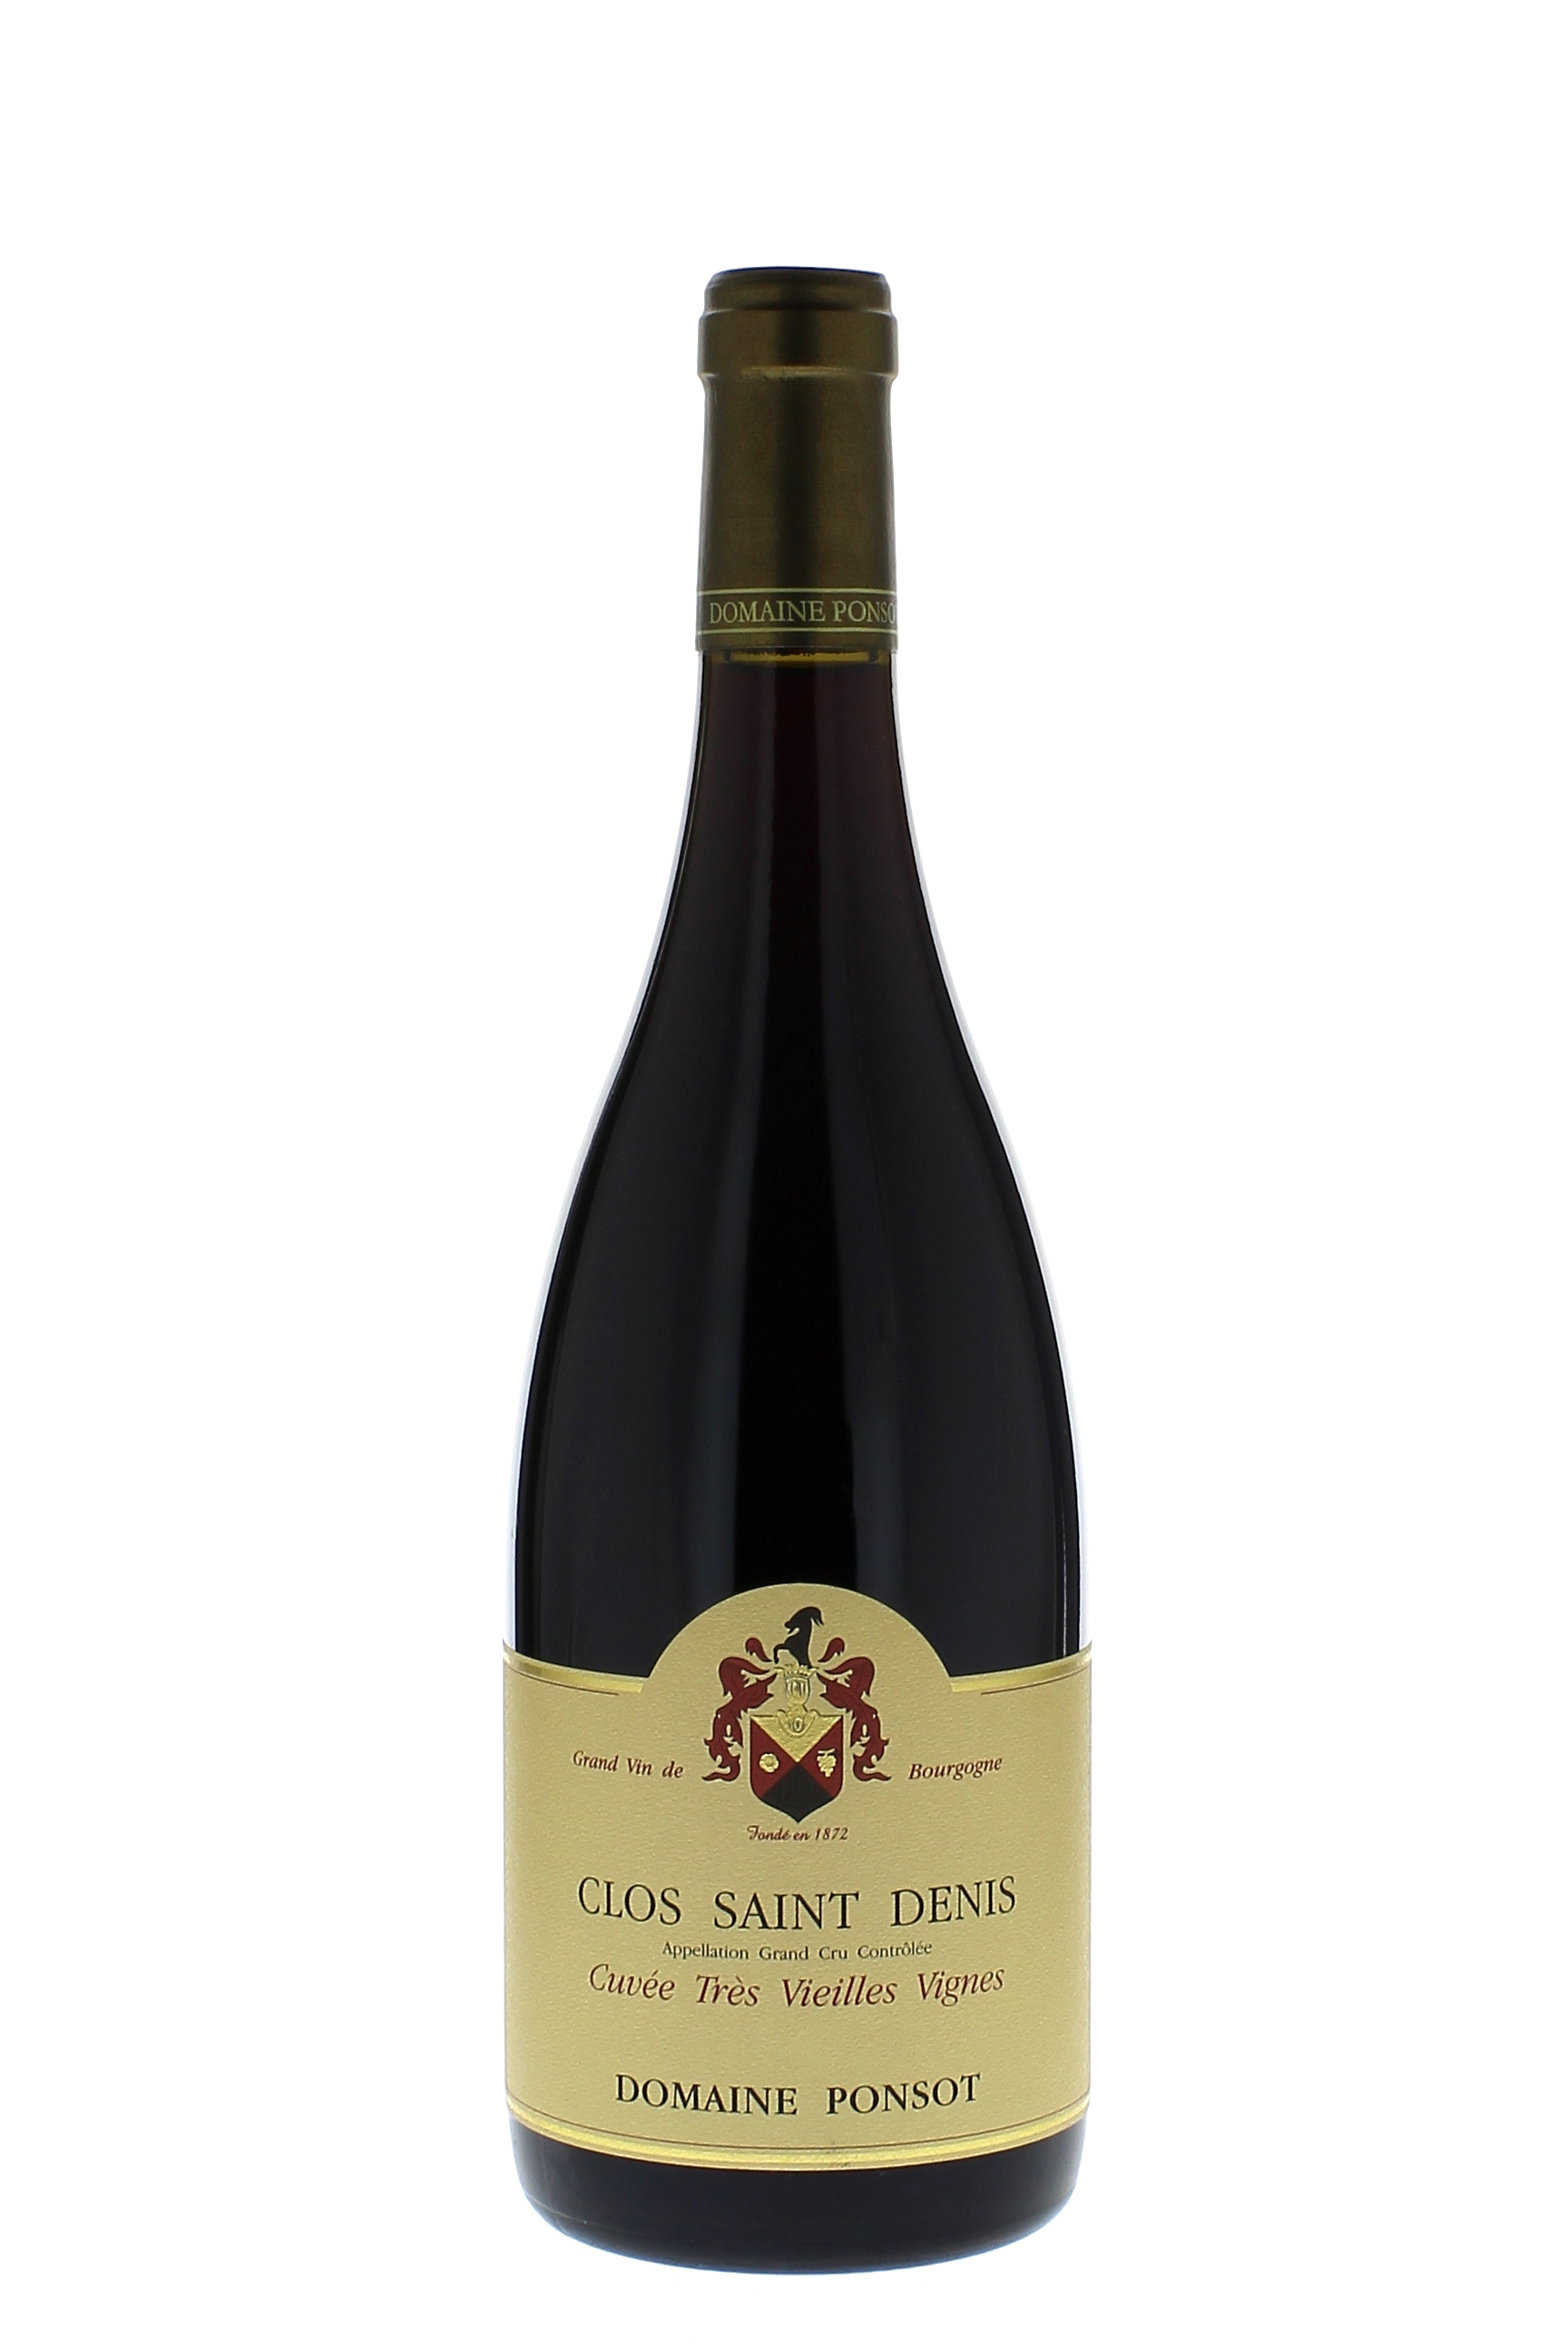 Clos saint denis trs vieilles vignes  grand cru 2010 Domaine PONSOT, Bourgogne rouge